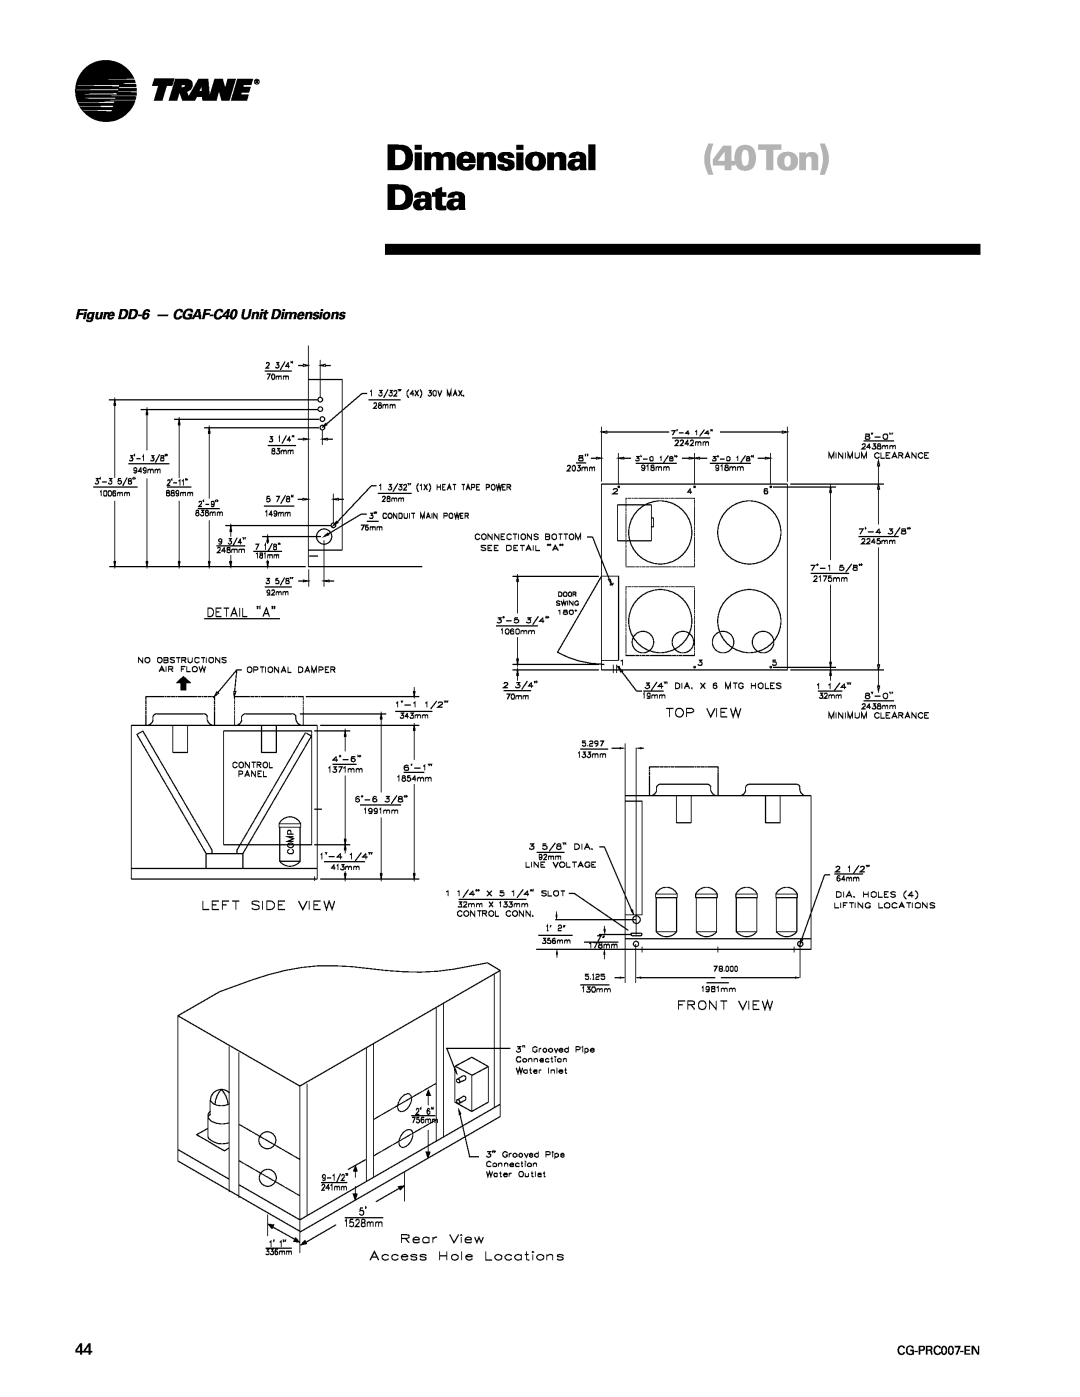 Trane CG-PRC007-EN manual Dimensional 40Ton Data, Figure DD-6- CGAF-C40Unit Dimensions 